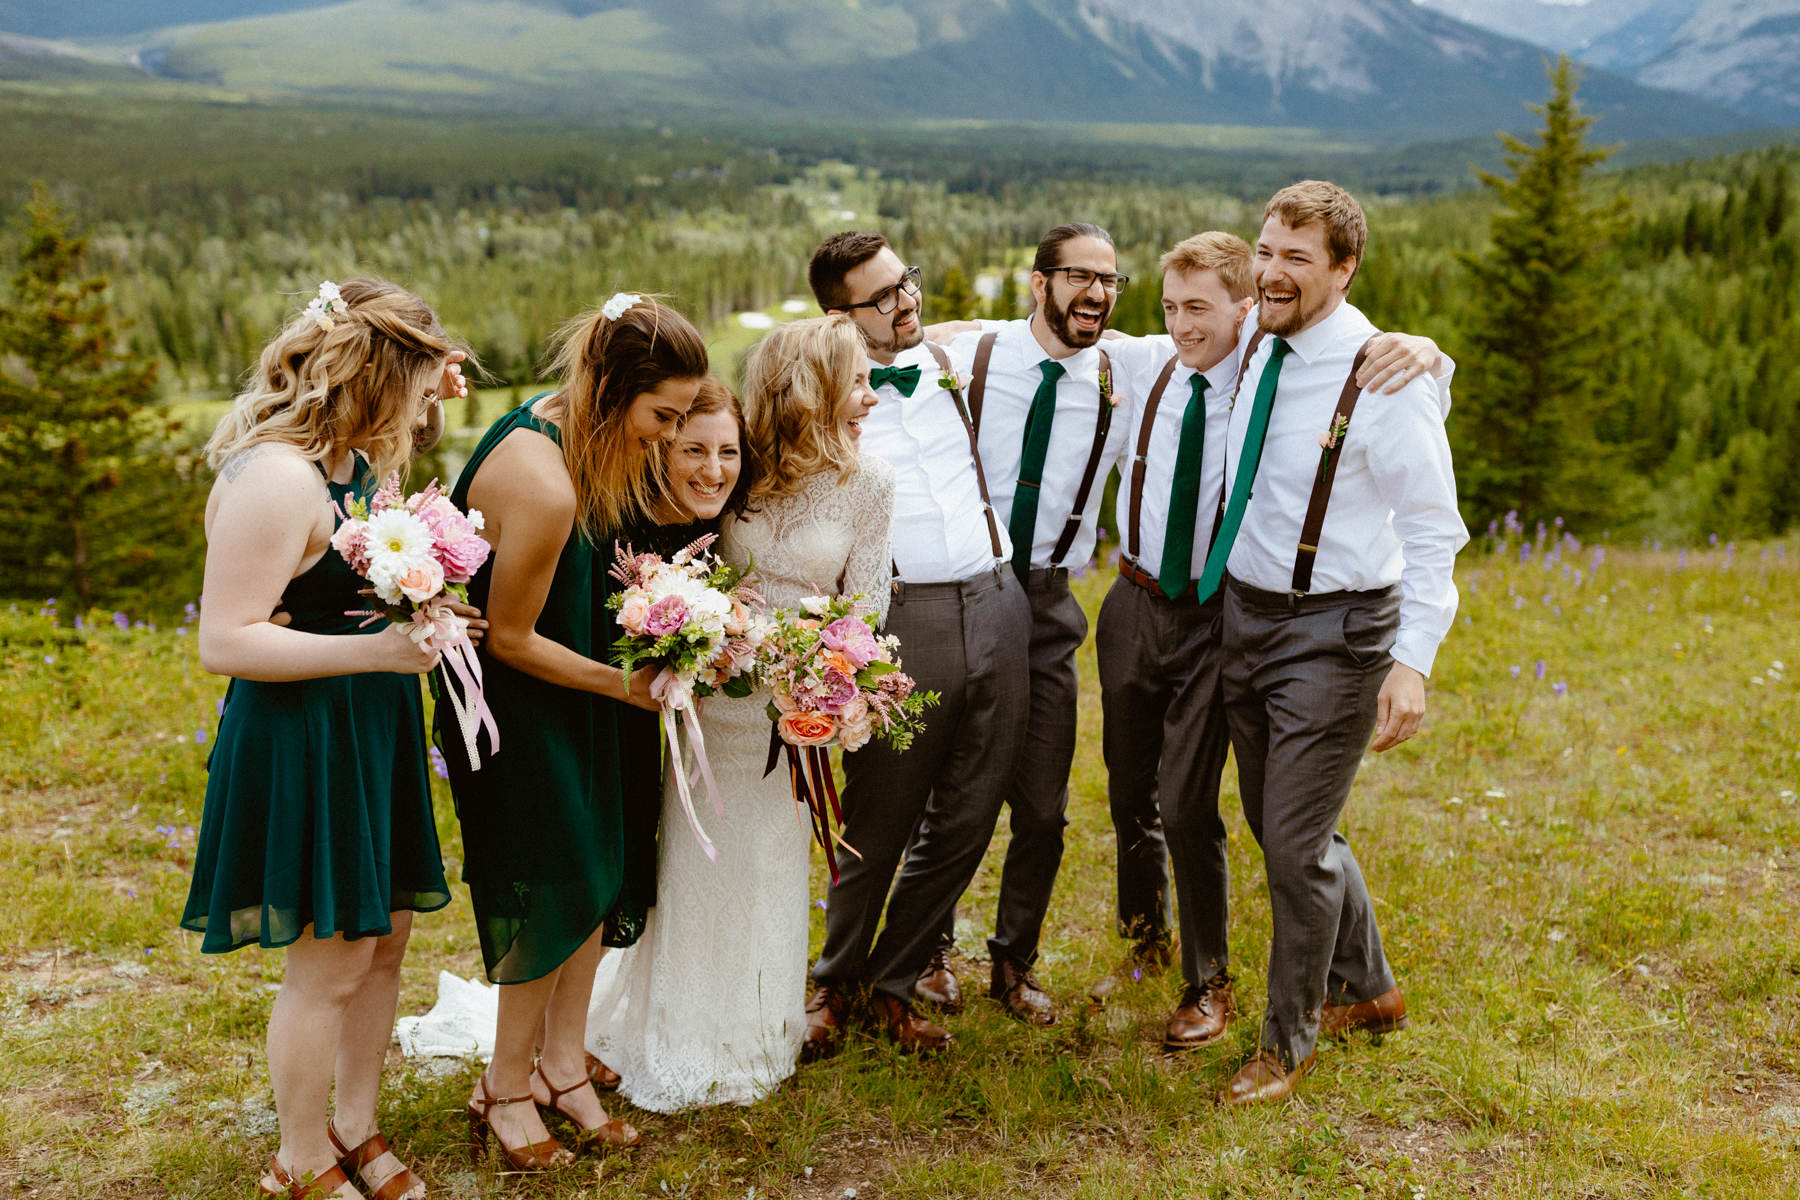 Kananaskis Wedding Photography at Pomeroy Mountain Lodge - Image  36